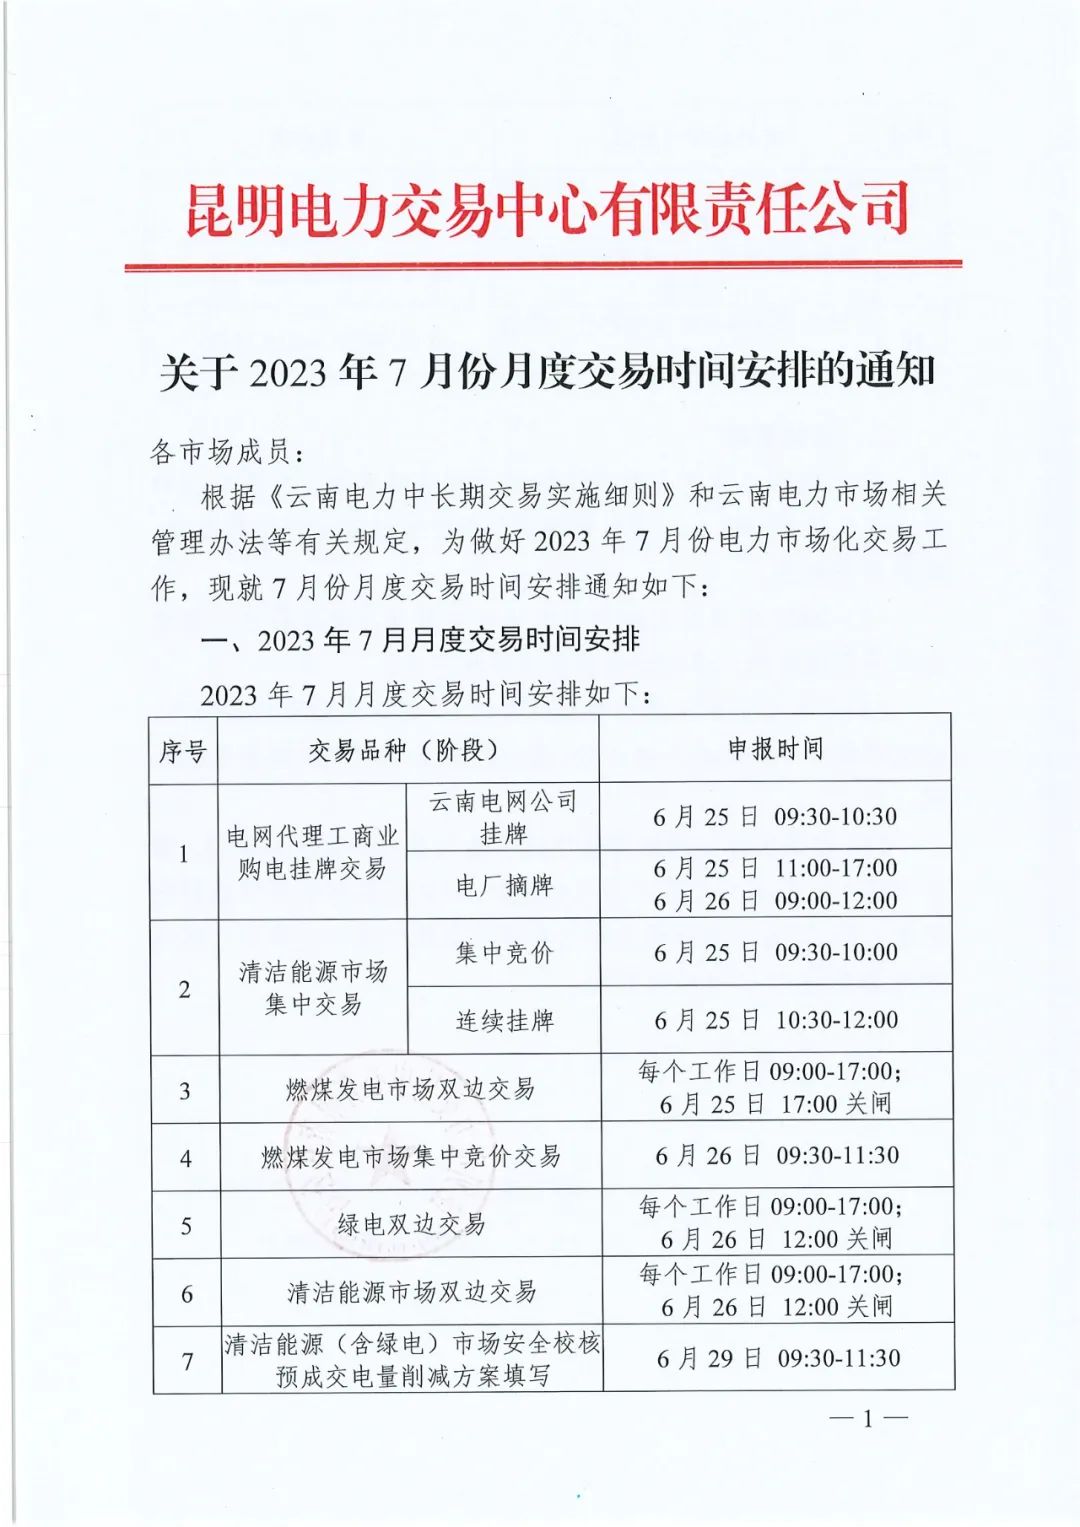 2023年7月份月度云南电力交易时间安排